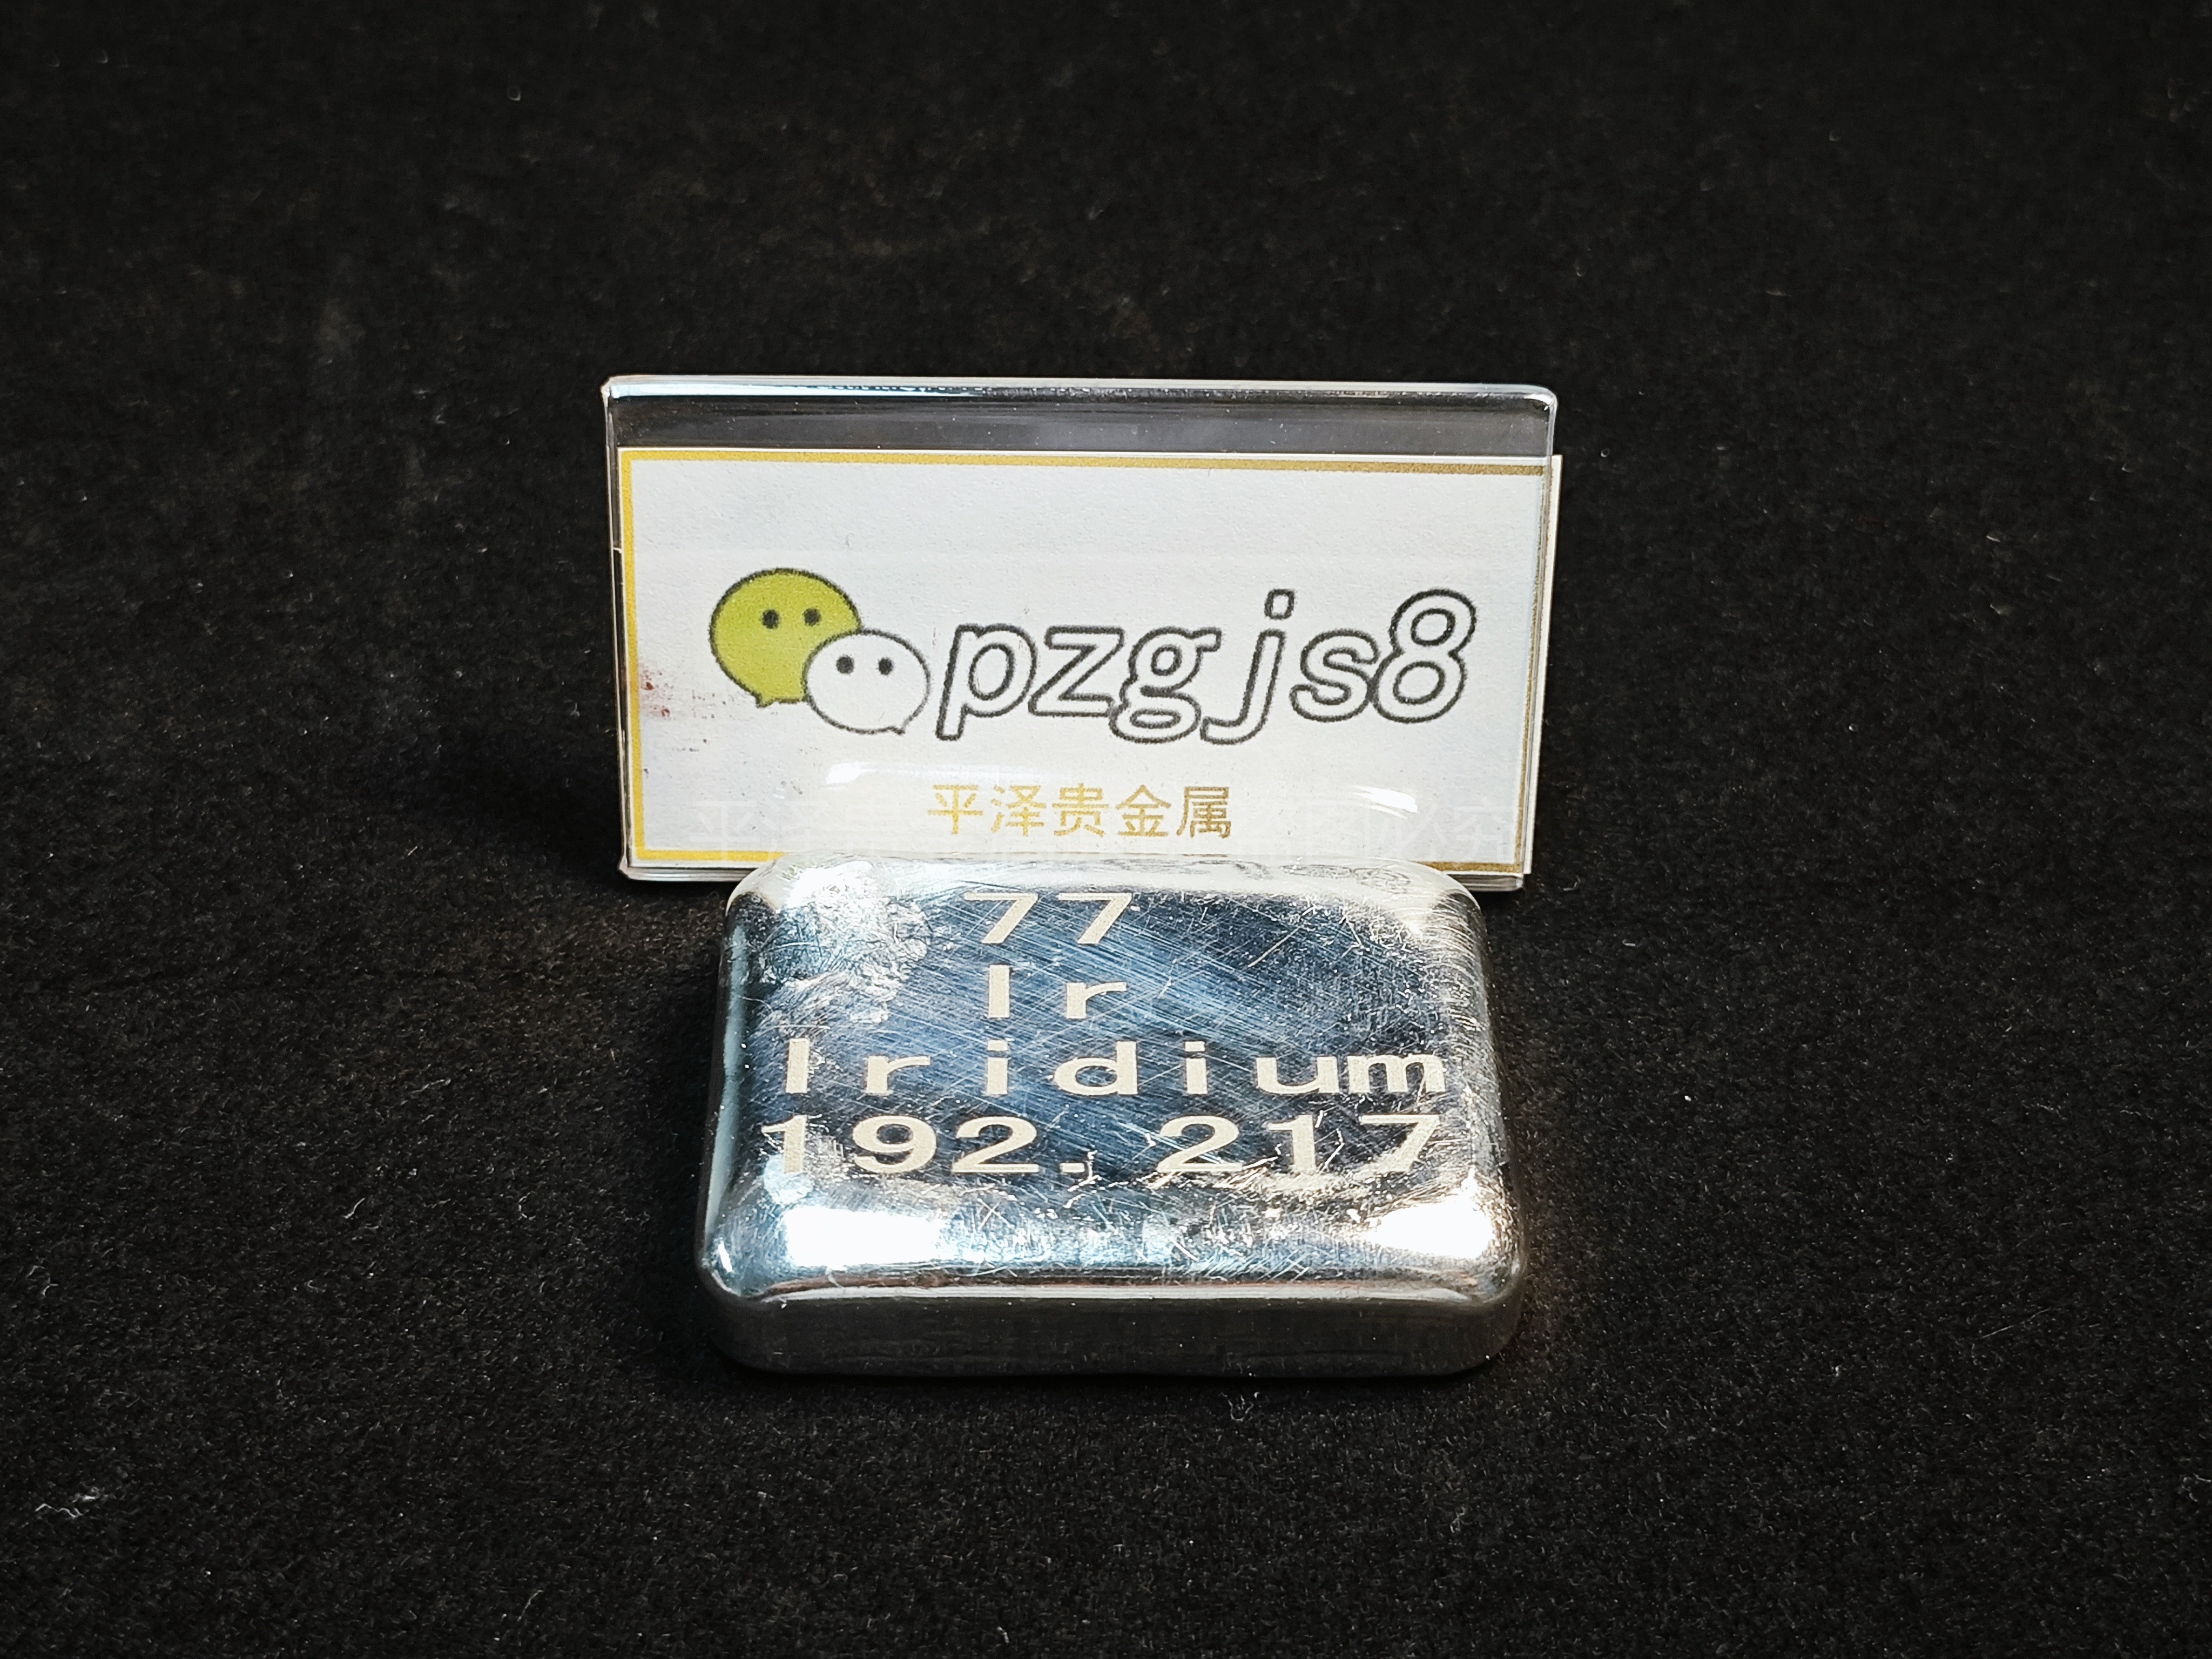 What is the cost per kilogram of iridium, the current price of iridium.